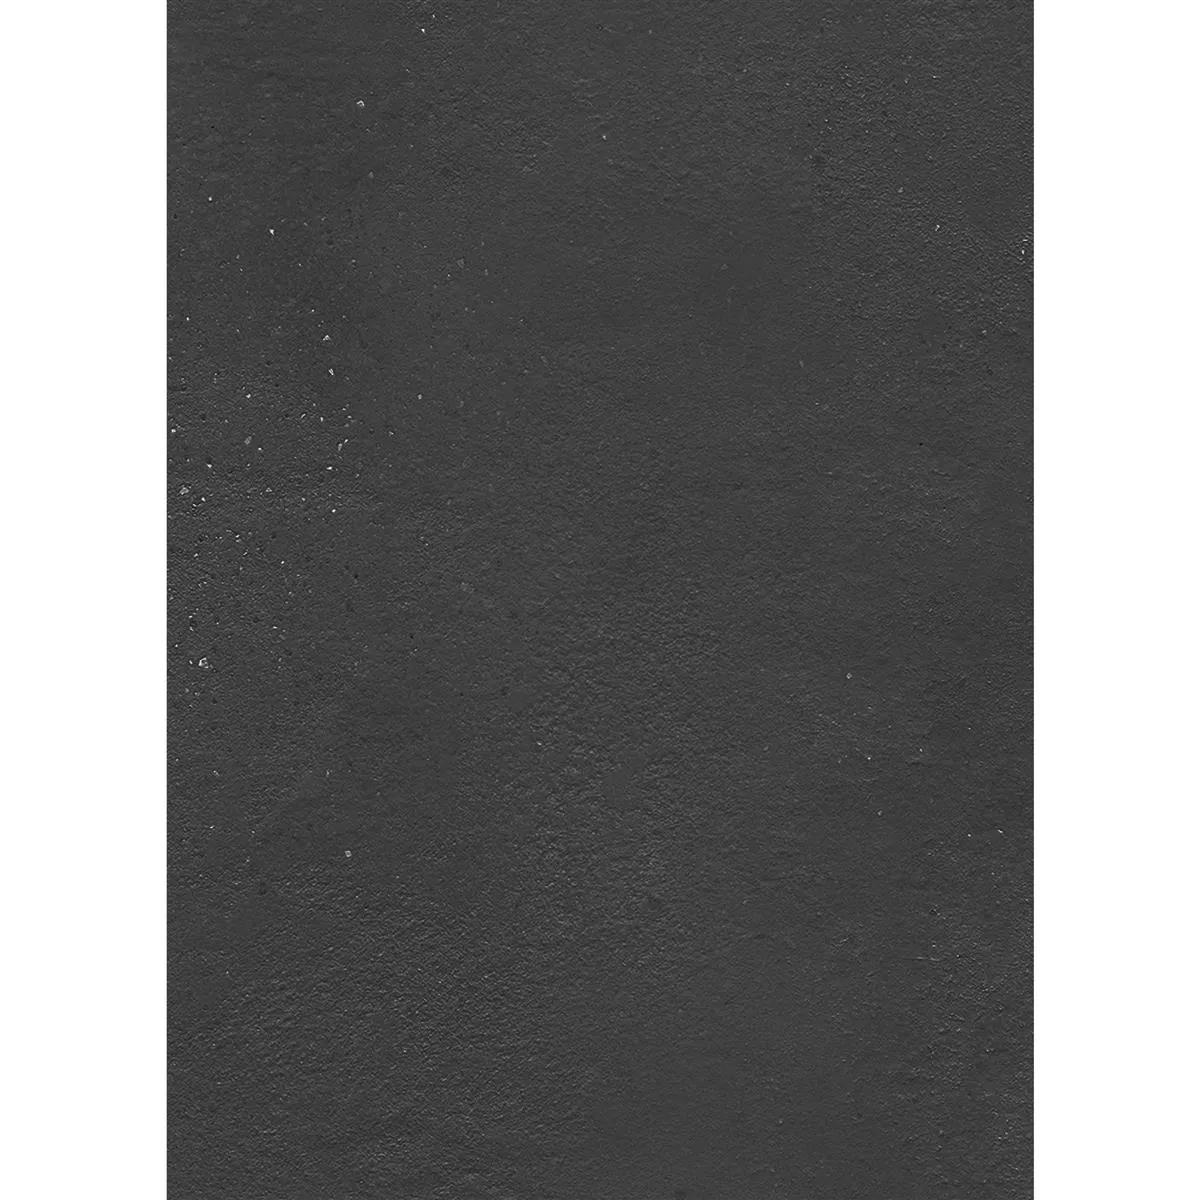 Πλακάκι Δαπέδου Malibu Συγκεκριμένη Εμφάνιση Ανθρακίτης 60x120cm